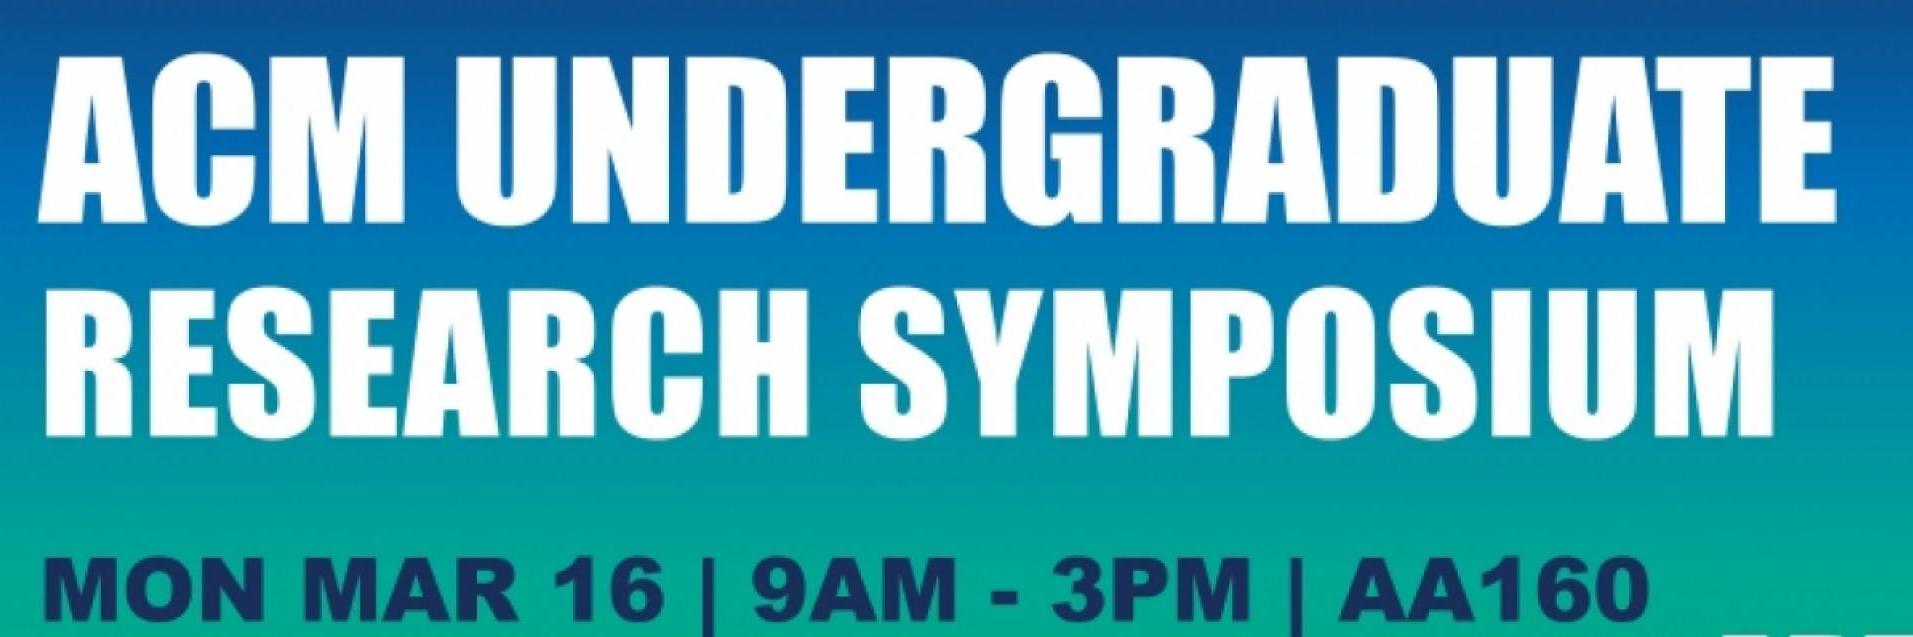 ACM Undergraduate Research Symposium banner